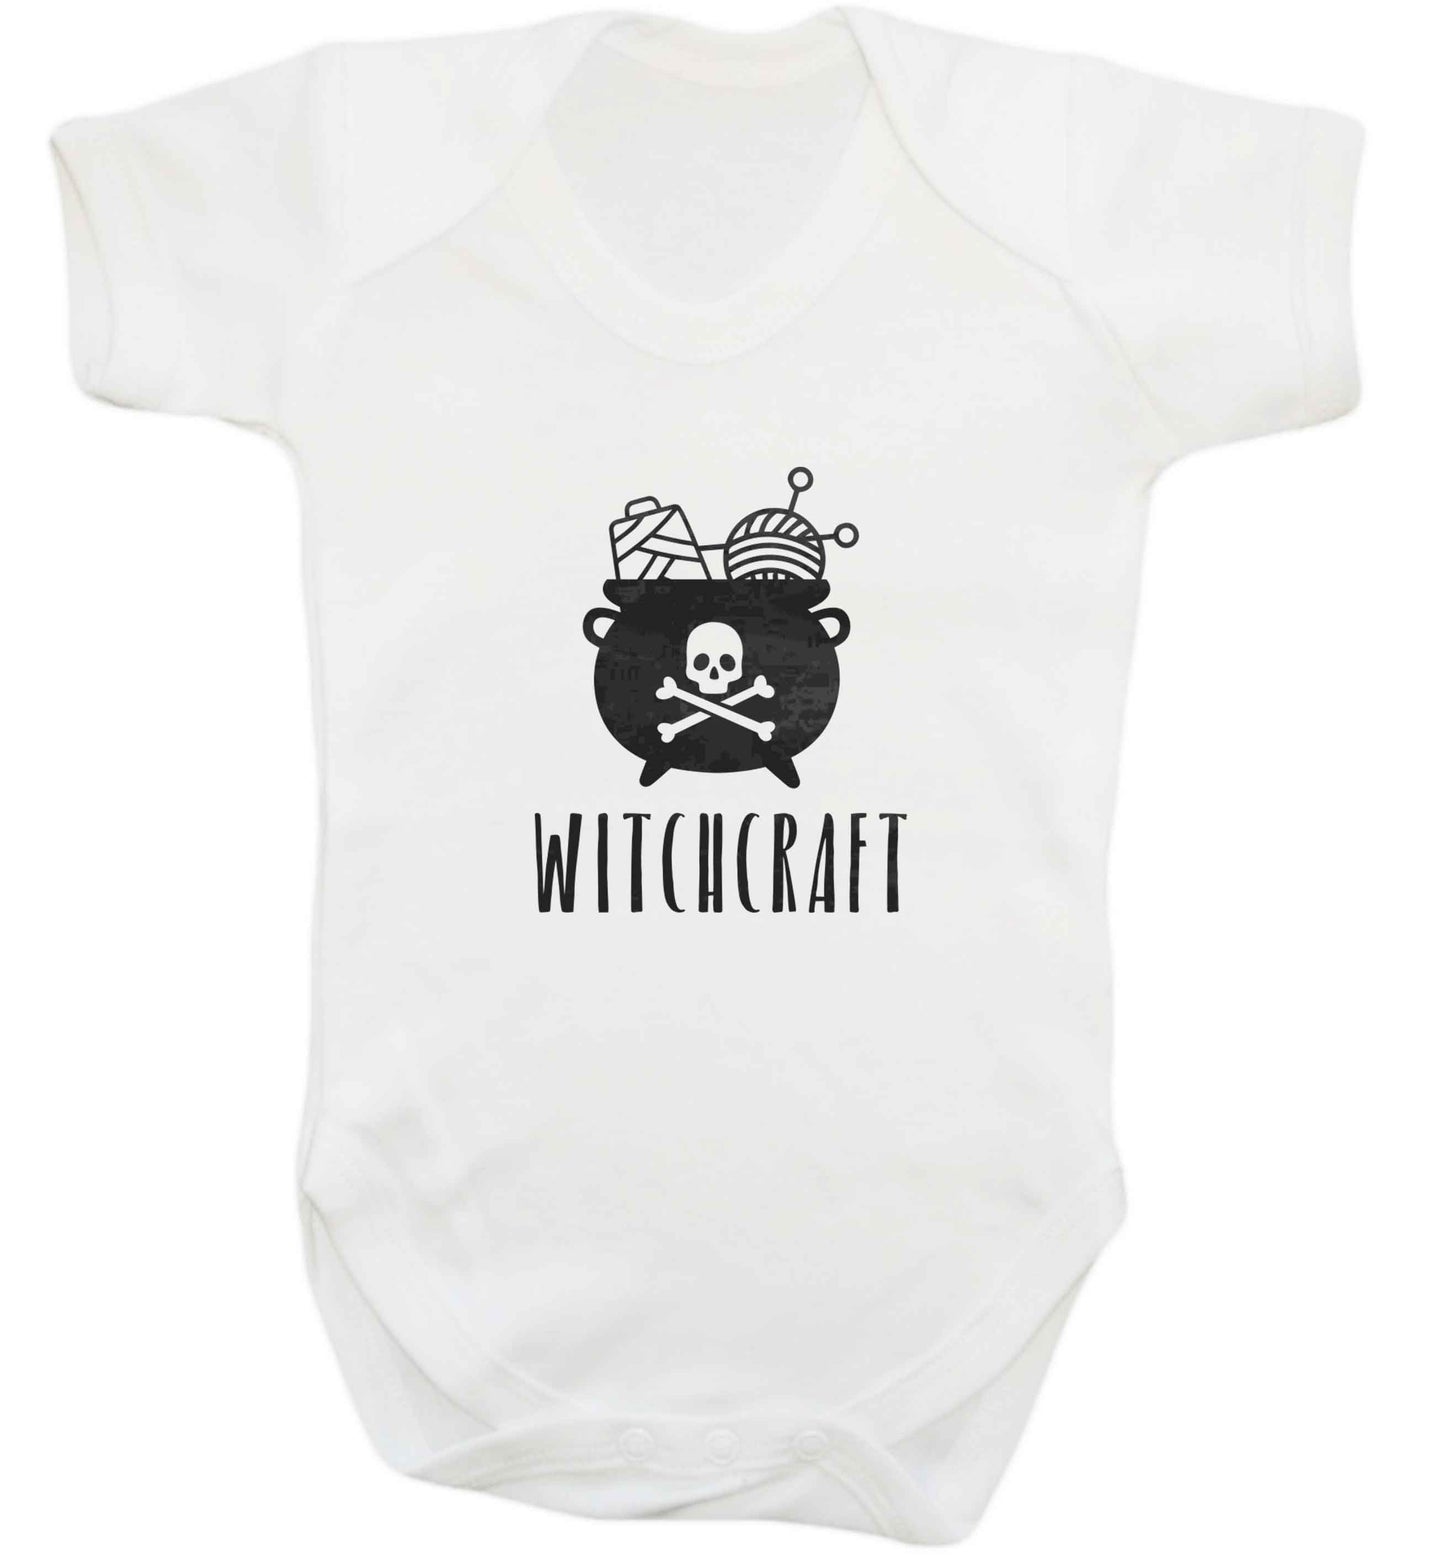 Witchcraft baby vest white 18-24 months